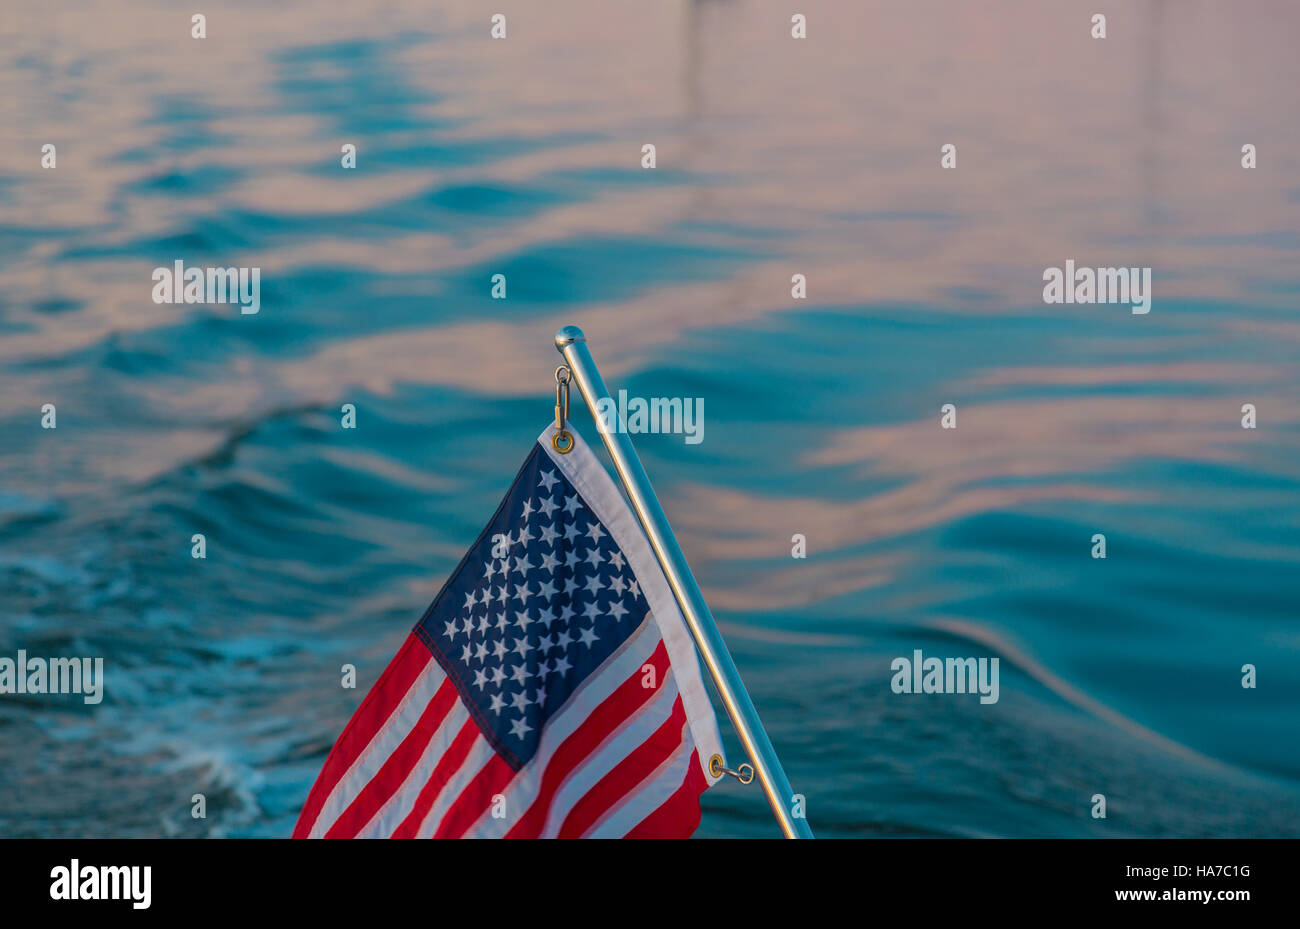 Imagen de detalle de una bandera americana en un poste de acero inoxidable con agua salada en segundo plano. Foto de stock